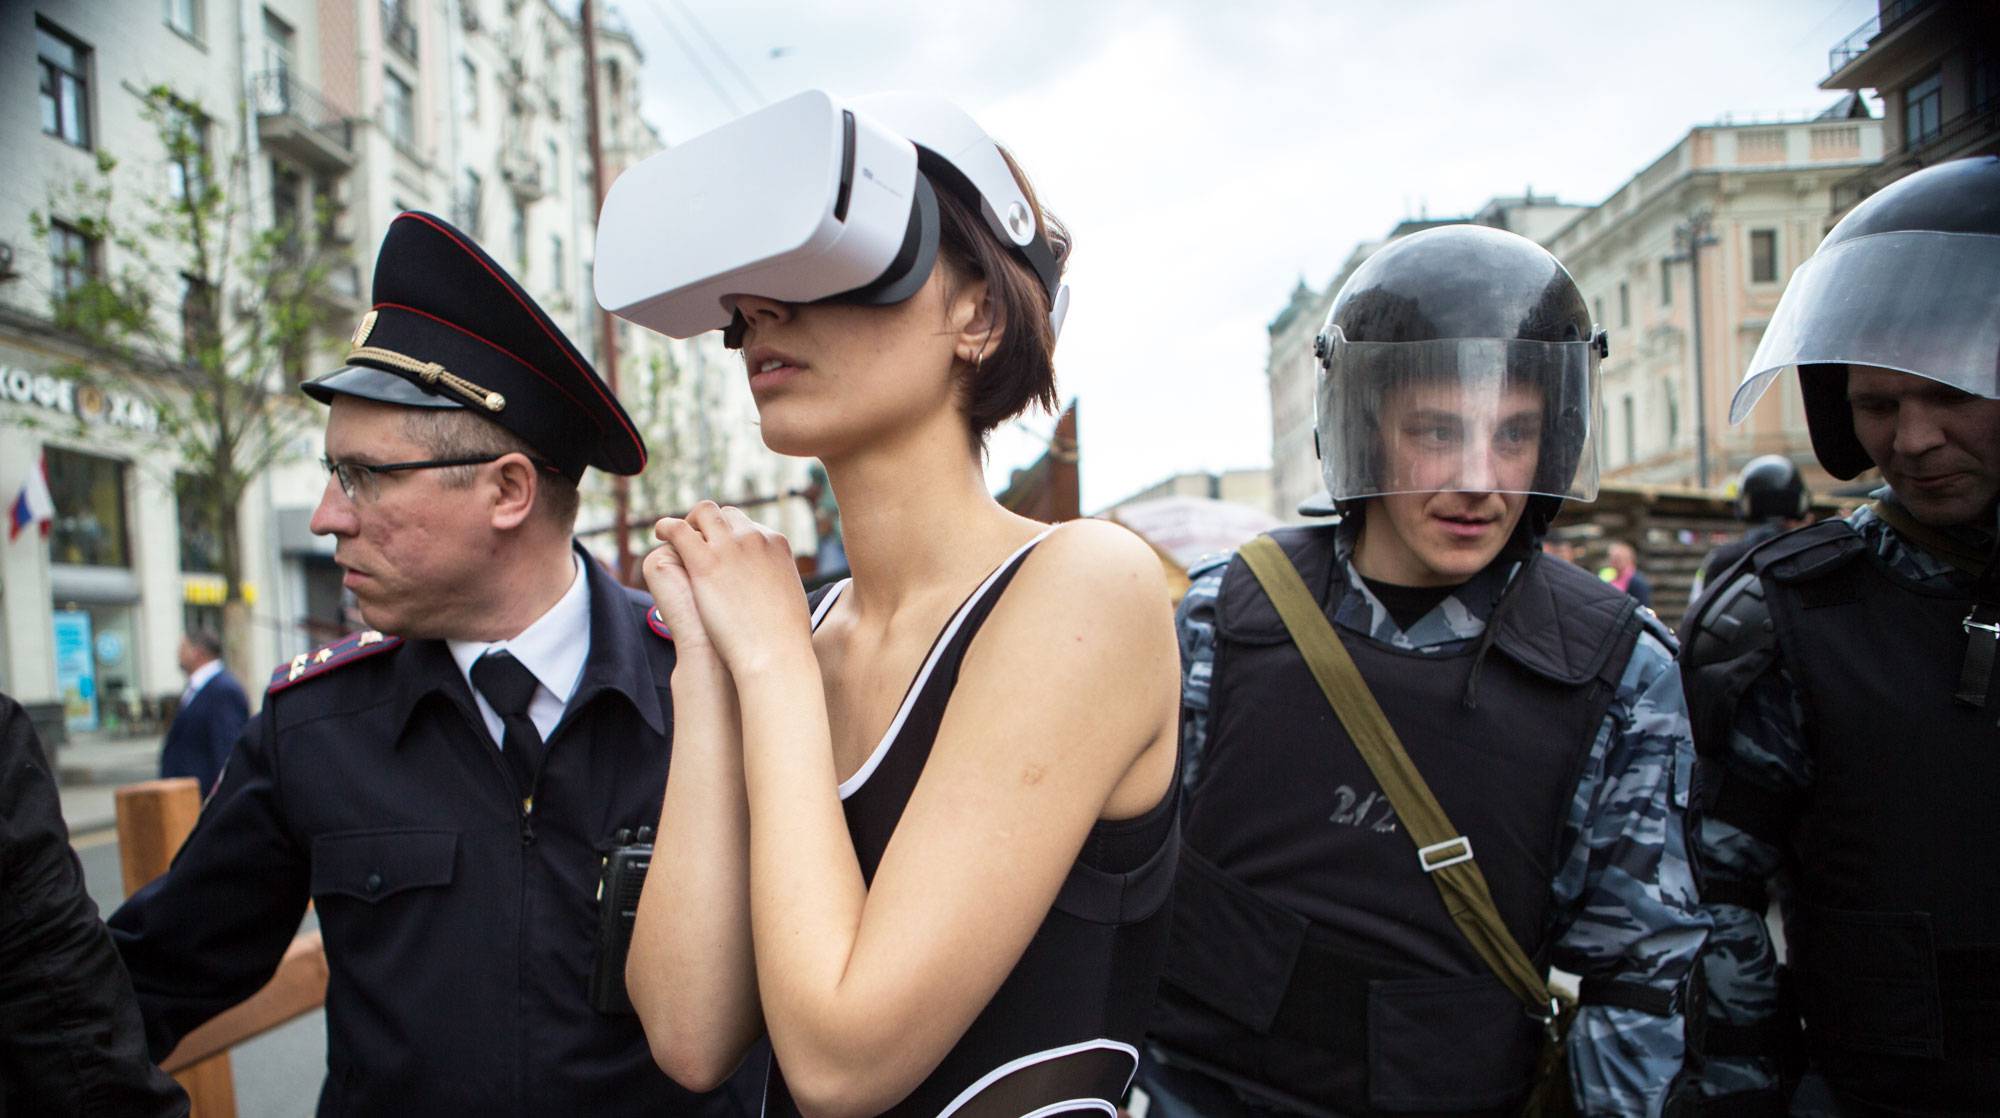 Dailystorm - Задержанную художницу в VR-шлеме из ОВД увезли в психбольницу